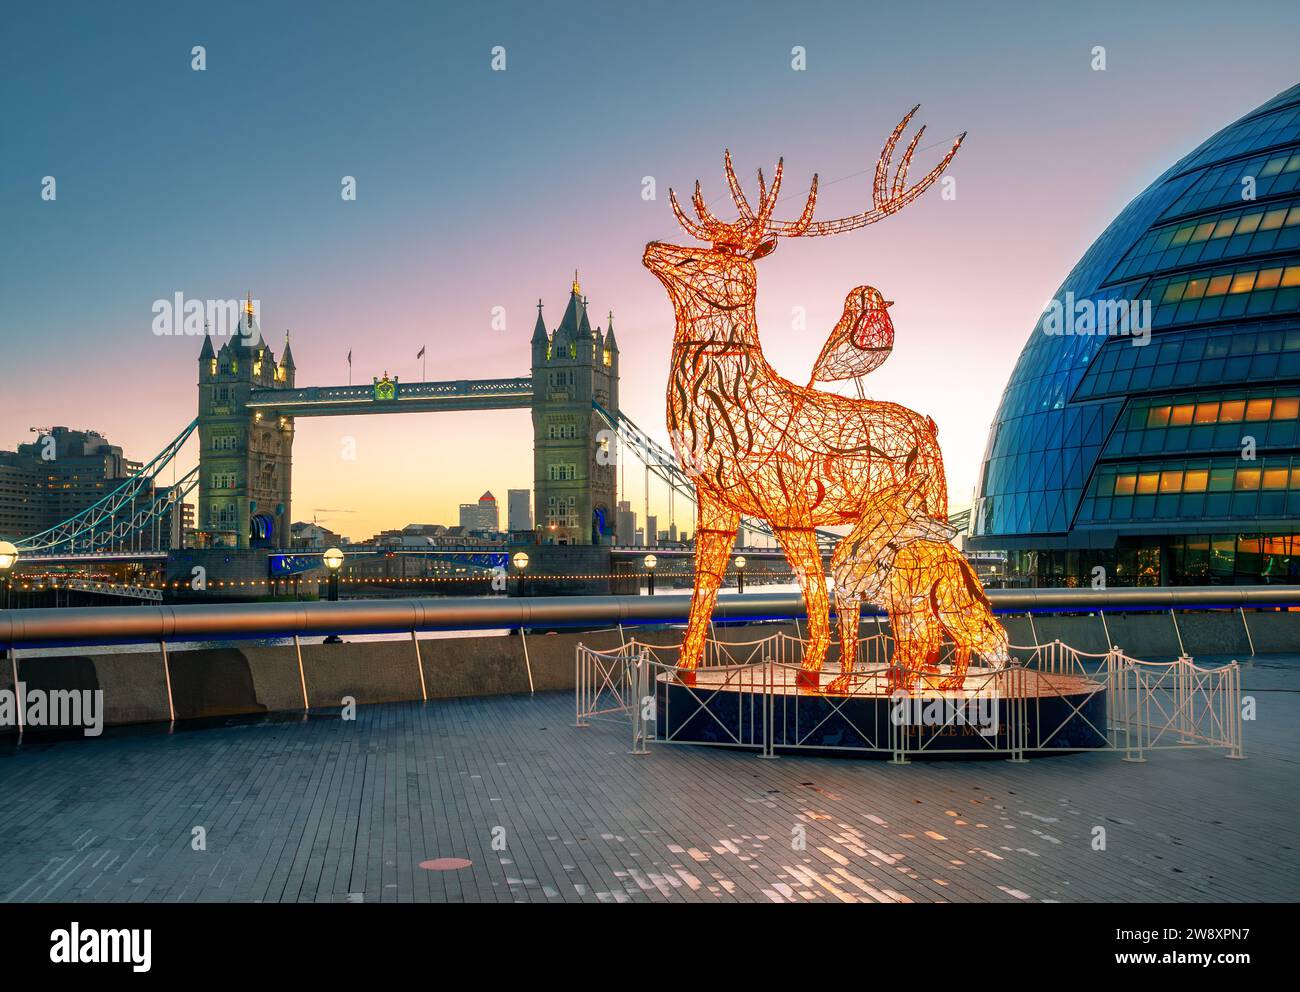 Londra, Inghilterra, Regno Unito - 17 dicembre 2021: La scena serale con luminose decorazioni natalizie specifiche di Londra in primo piano; il cervo, la volpe Foto Stock